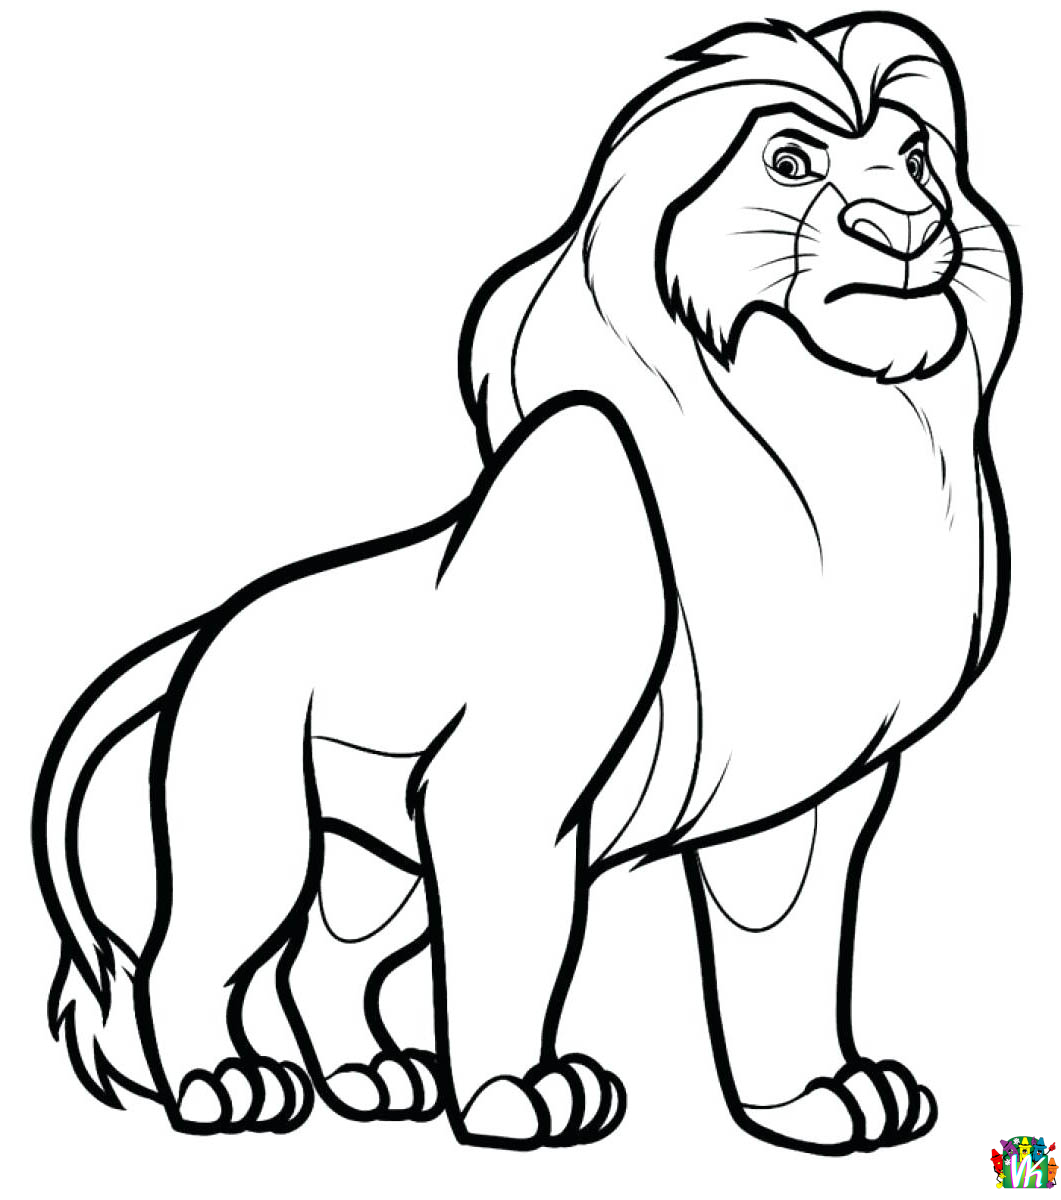 Leijonat-varityskuvat (11)